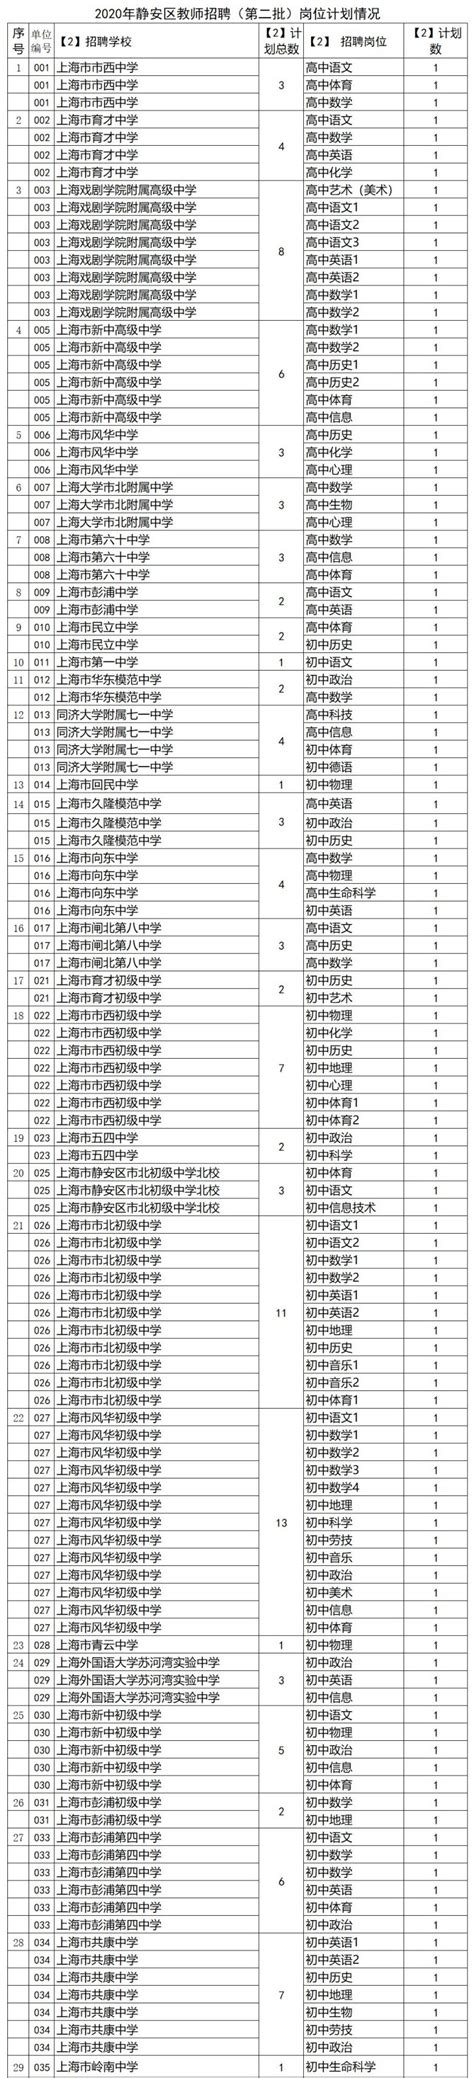 2020上海静安区教师招聘第二批 招聘567名教师- 上海本地宝